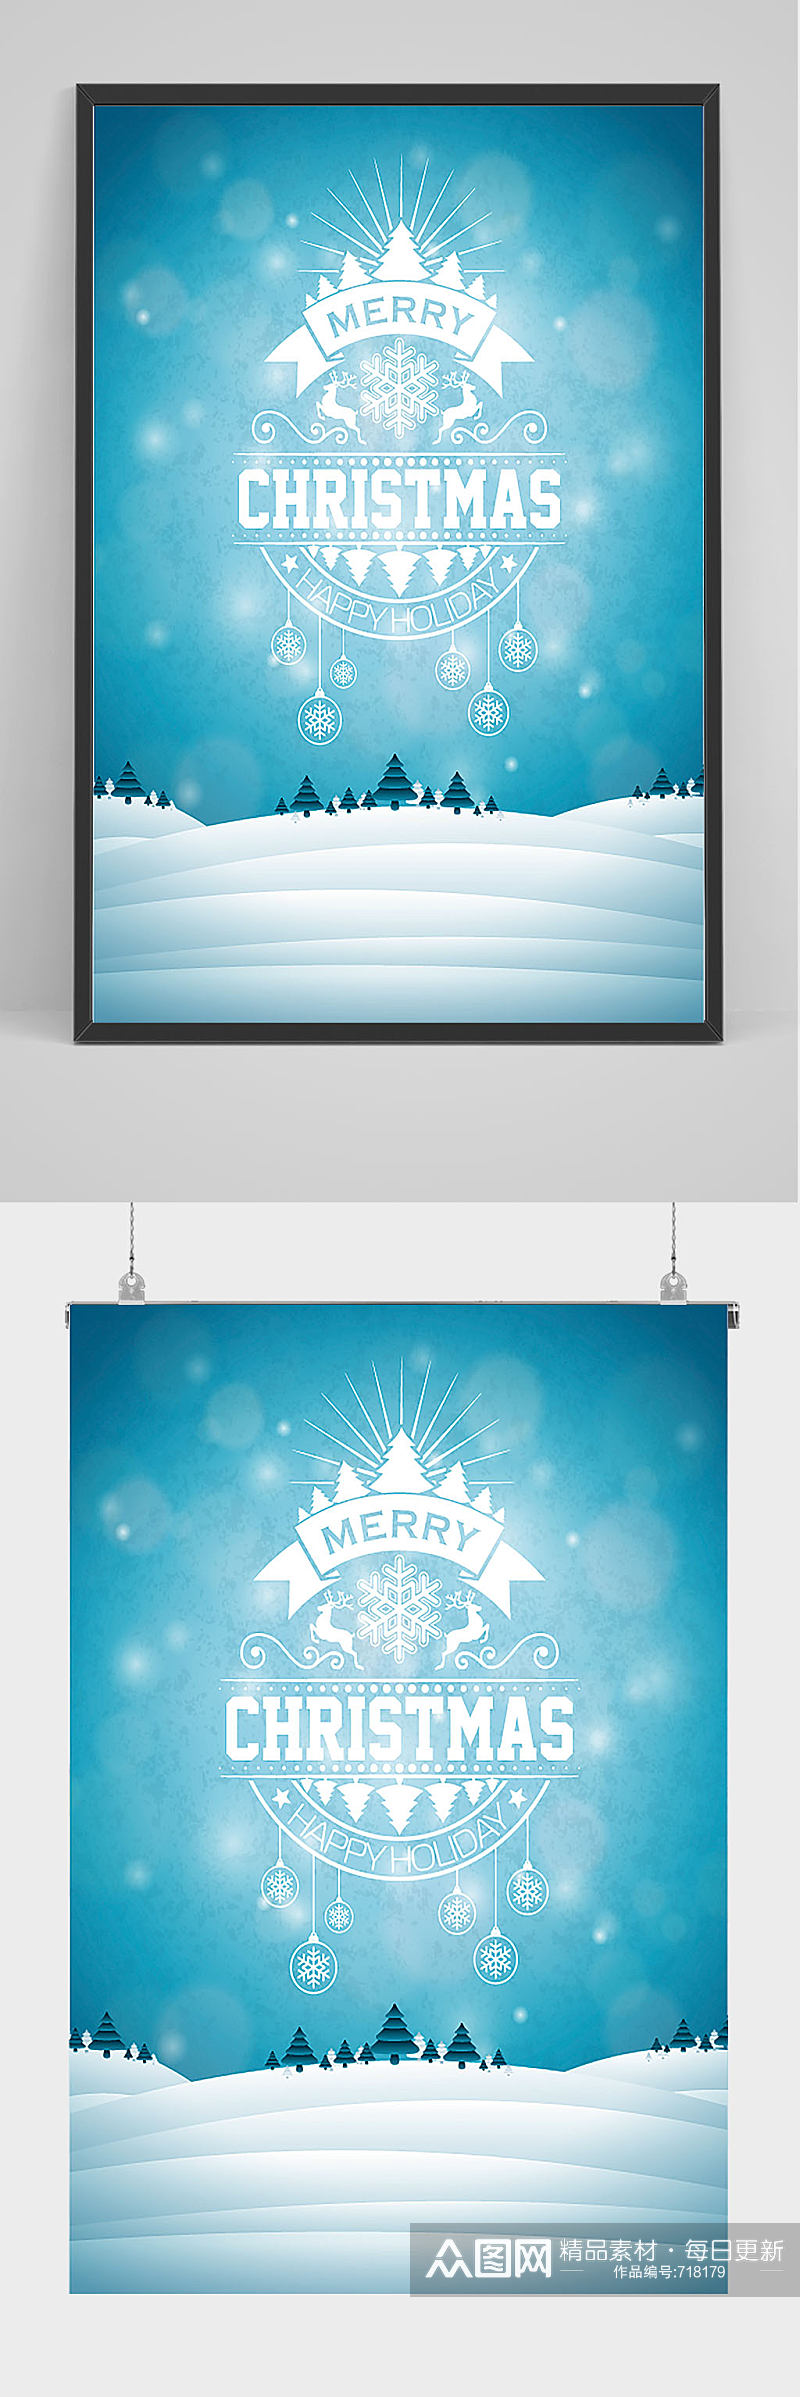 蓝色简洁圣诞节海报设计素材